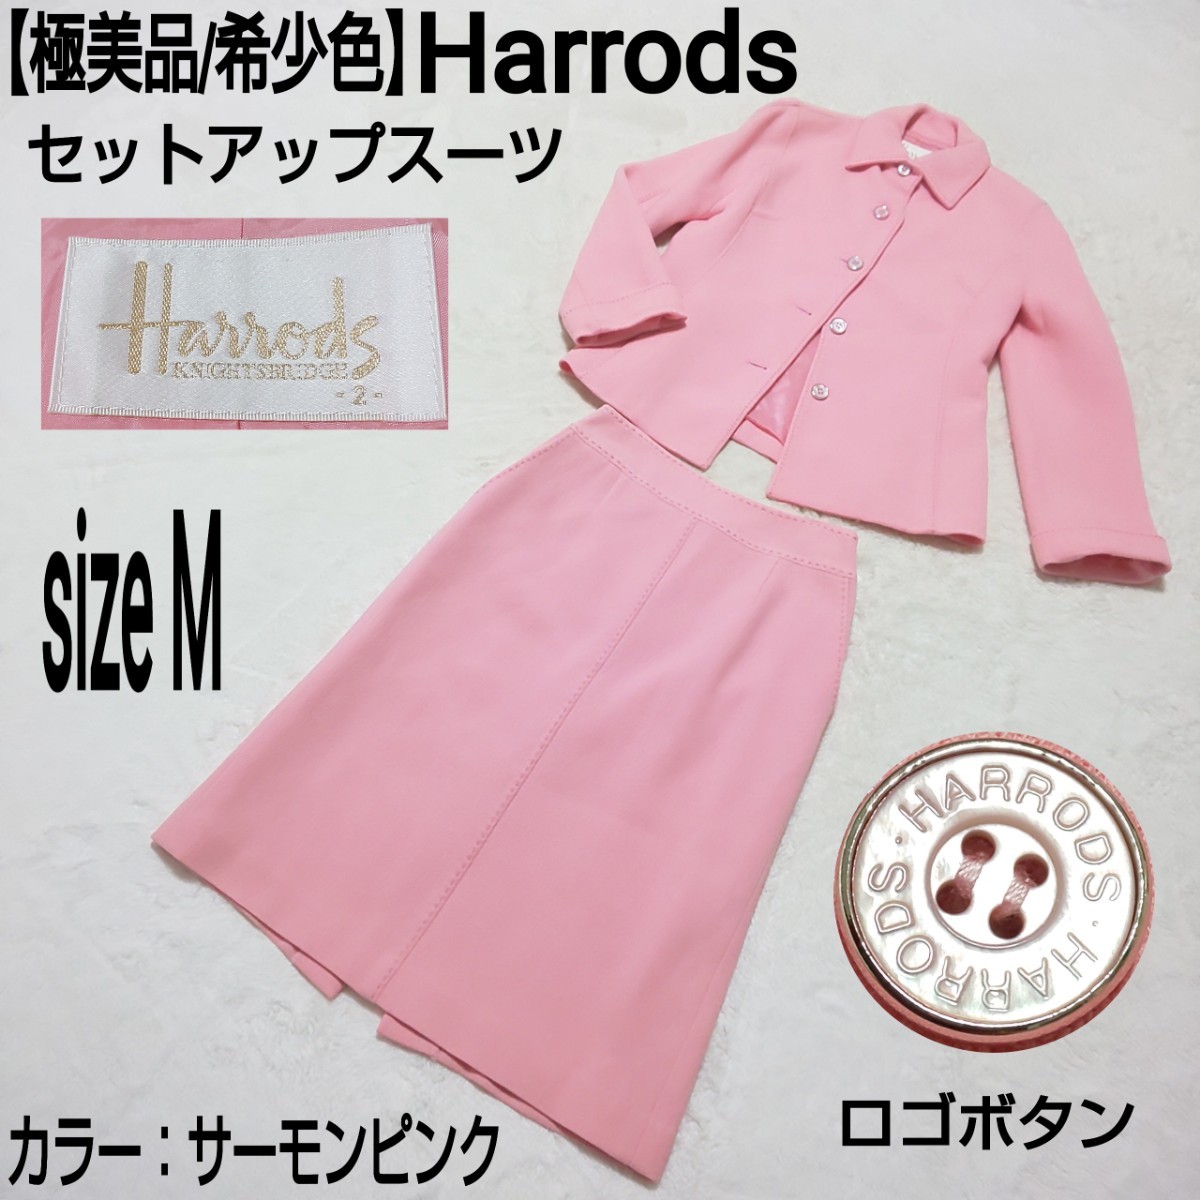 【極美品/希少色】Harrods ハロッズ セットアップスーツ セレモニースーツ テーラードジャケット ロゴボタン サーモンピンク 2/Mサイズ